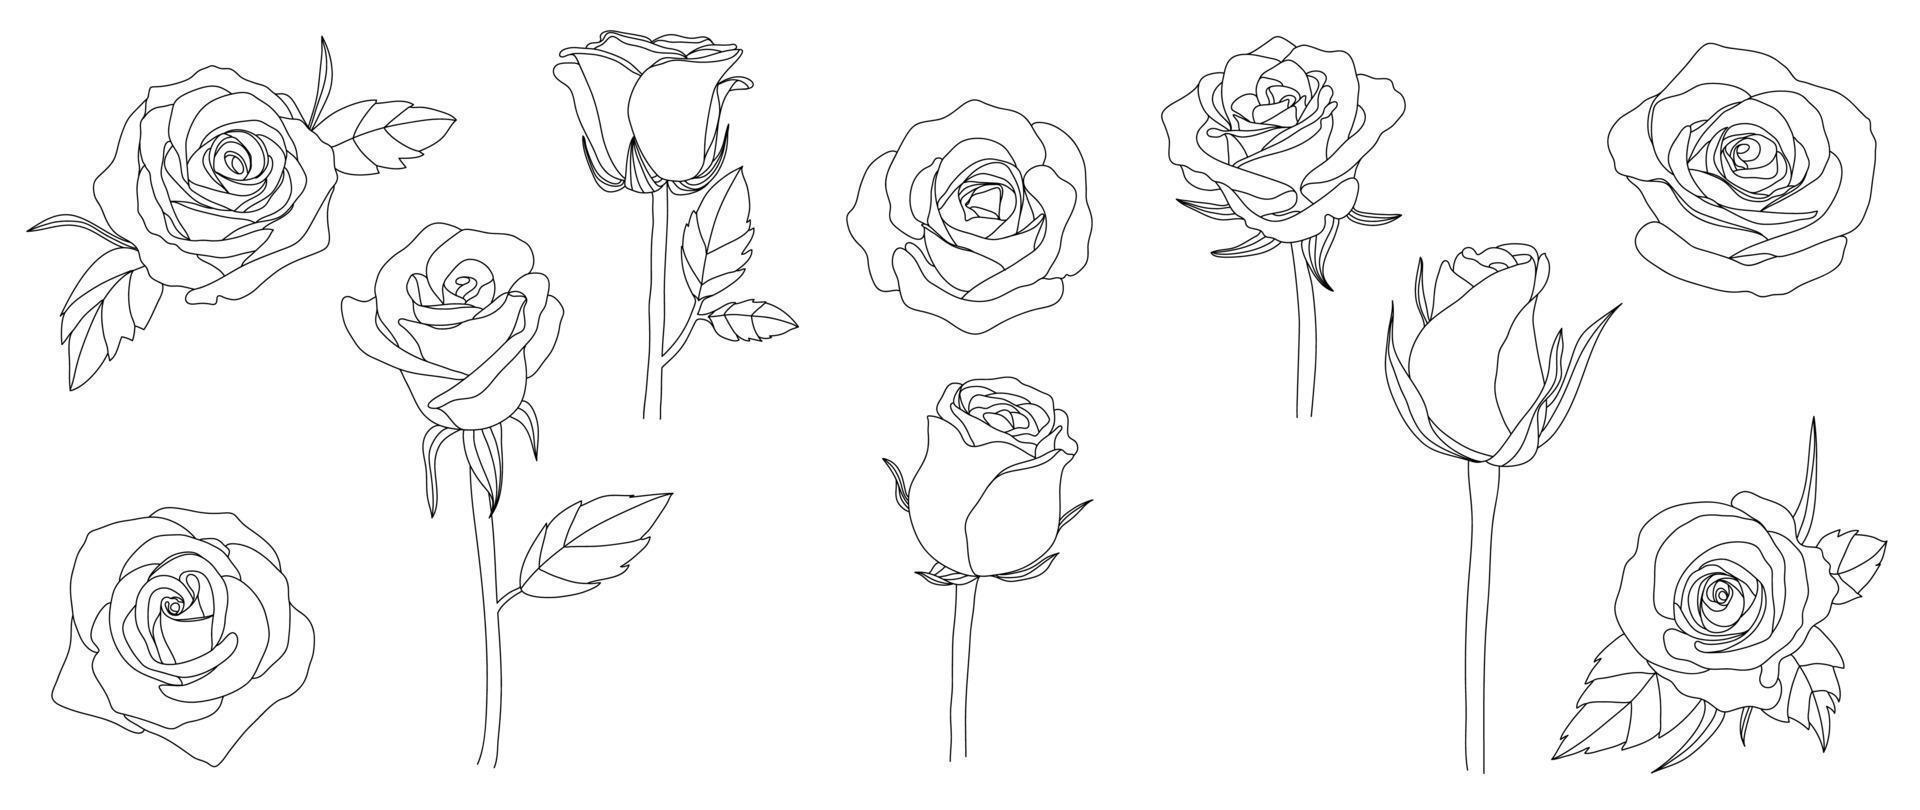 uppsättning av hand dragen linje konst reste sig blommor vektor. blommig element samling av svart vit teckning kontur enkel reste sig blommor. design illustration för grafik, logotyper, kosmetika, affisch, kort, varumärke. vektor